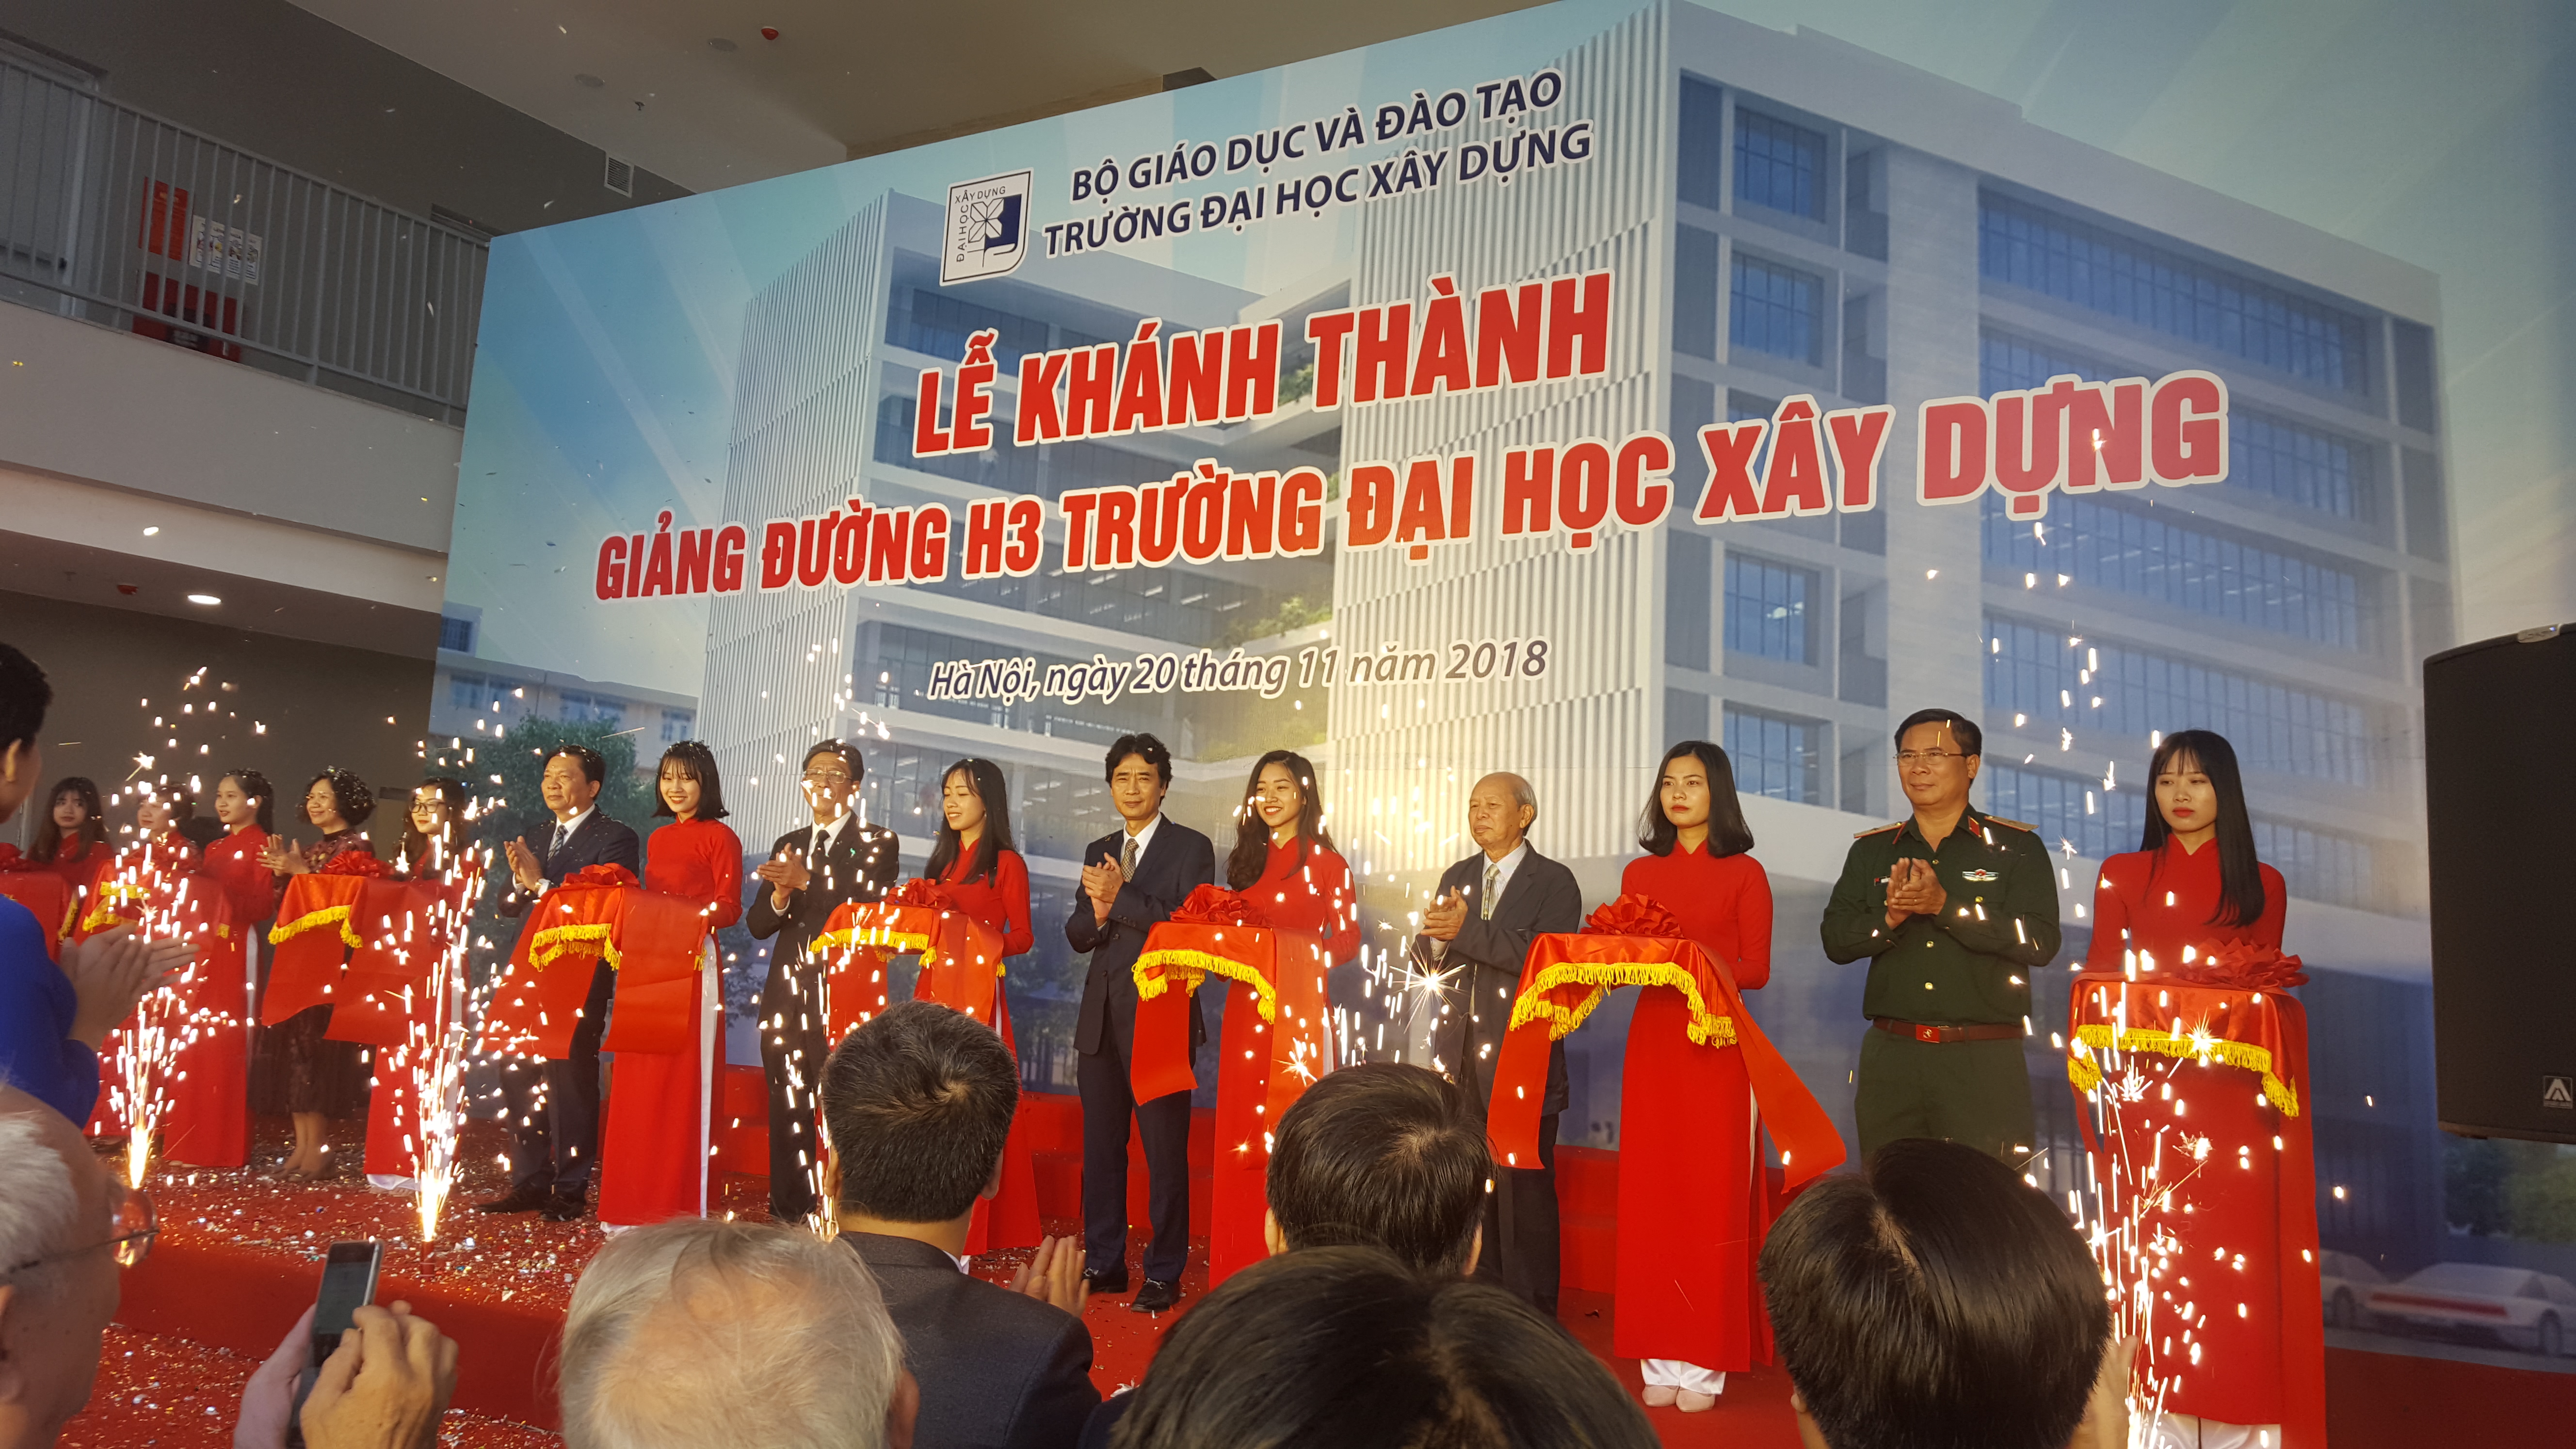 CONINCO tham dự Lễ Khánh thành giảng đường H3  và Lễ Kỷ niệm ngày Nhà giáo Việt Nam 20/11  của Trường Đại học Xây dựng